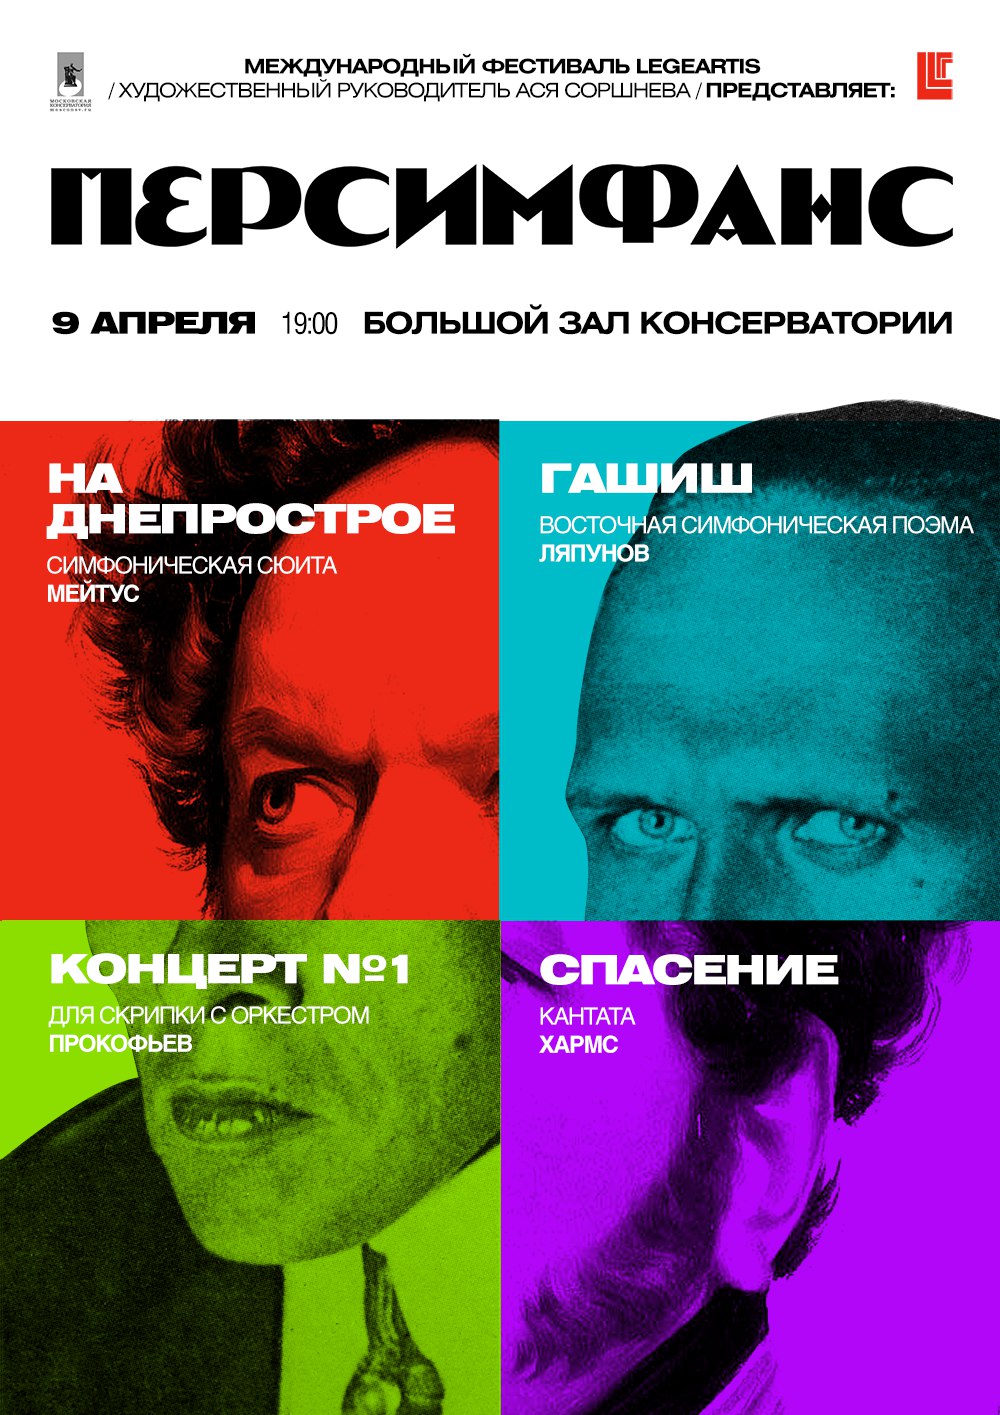 Концерт «Персимфанса» состоится в Московской консерватории